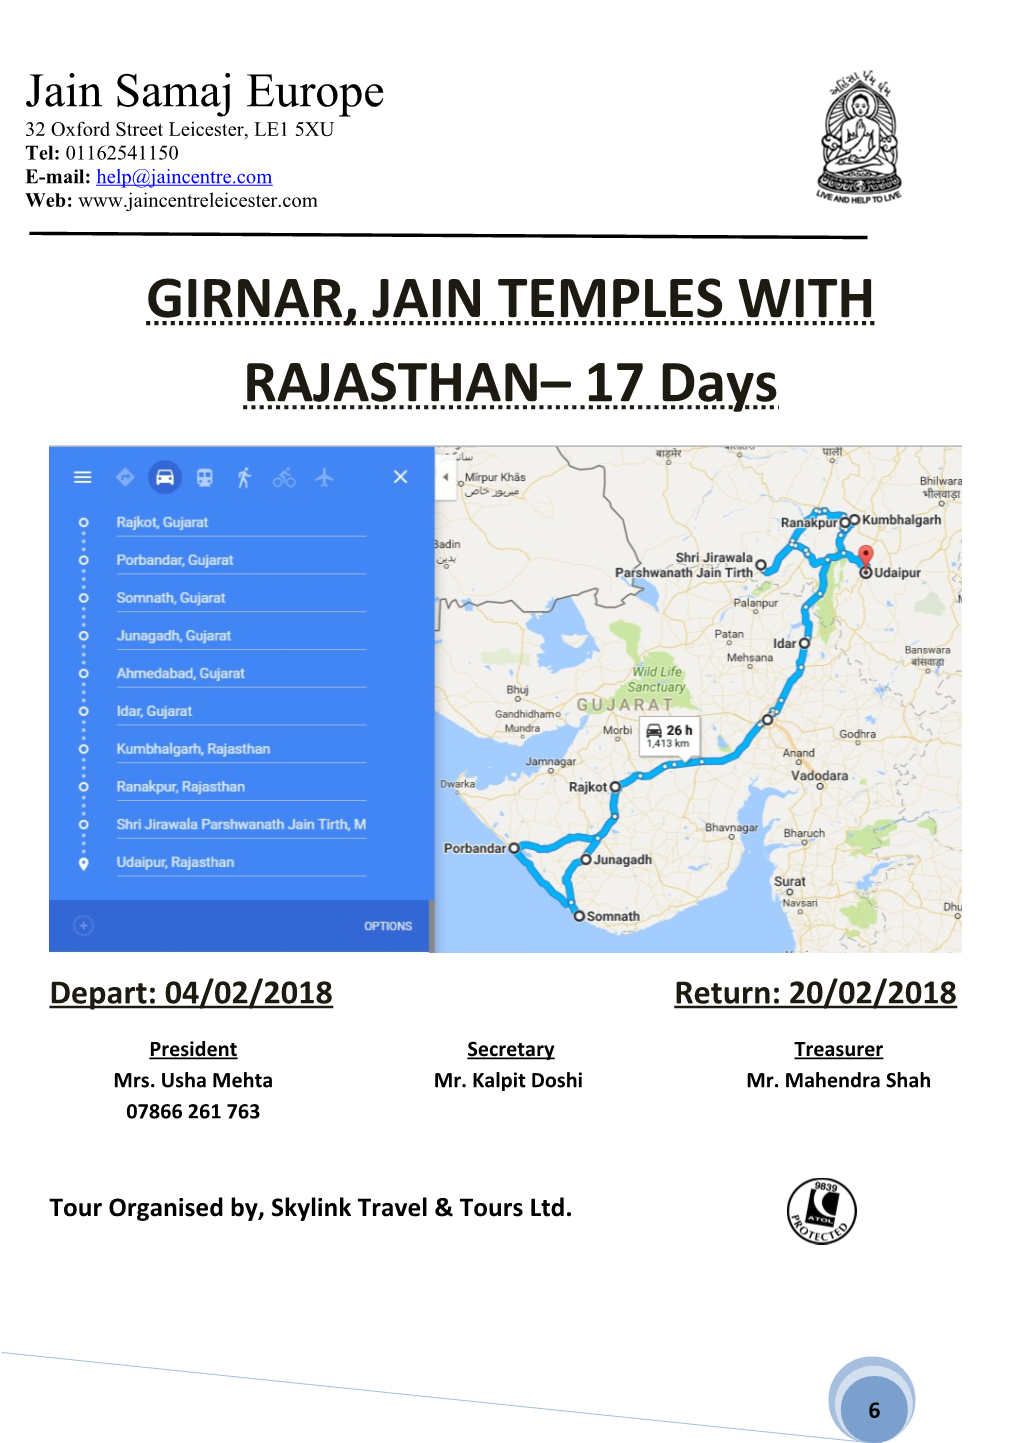 GIRNAR, JAIN TEMPLES with RAJASTHAN 17 Days